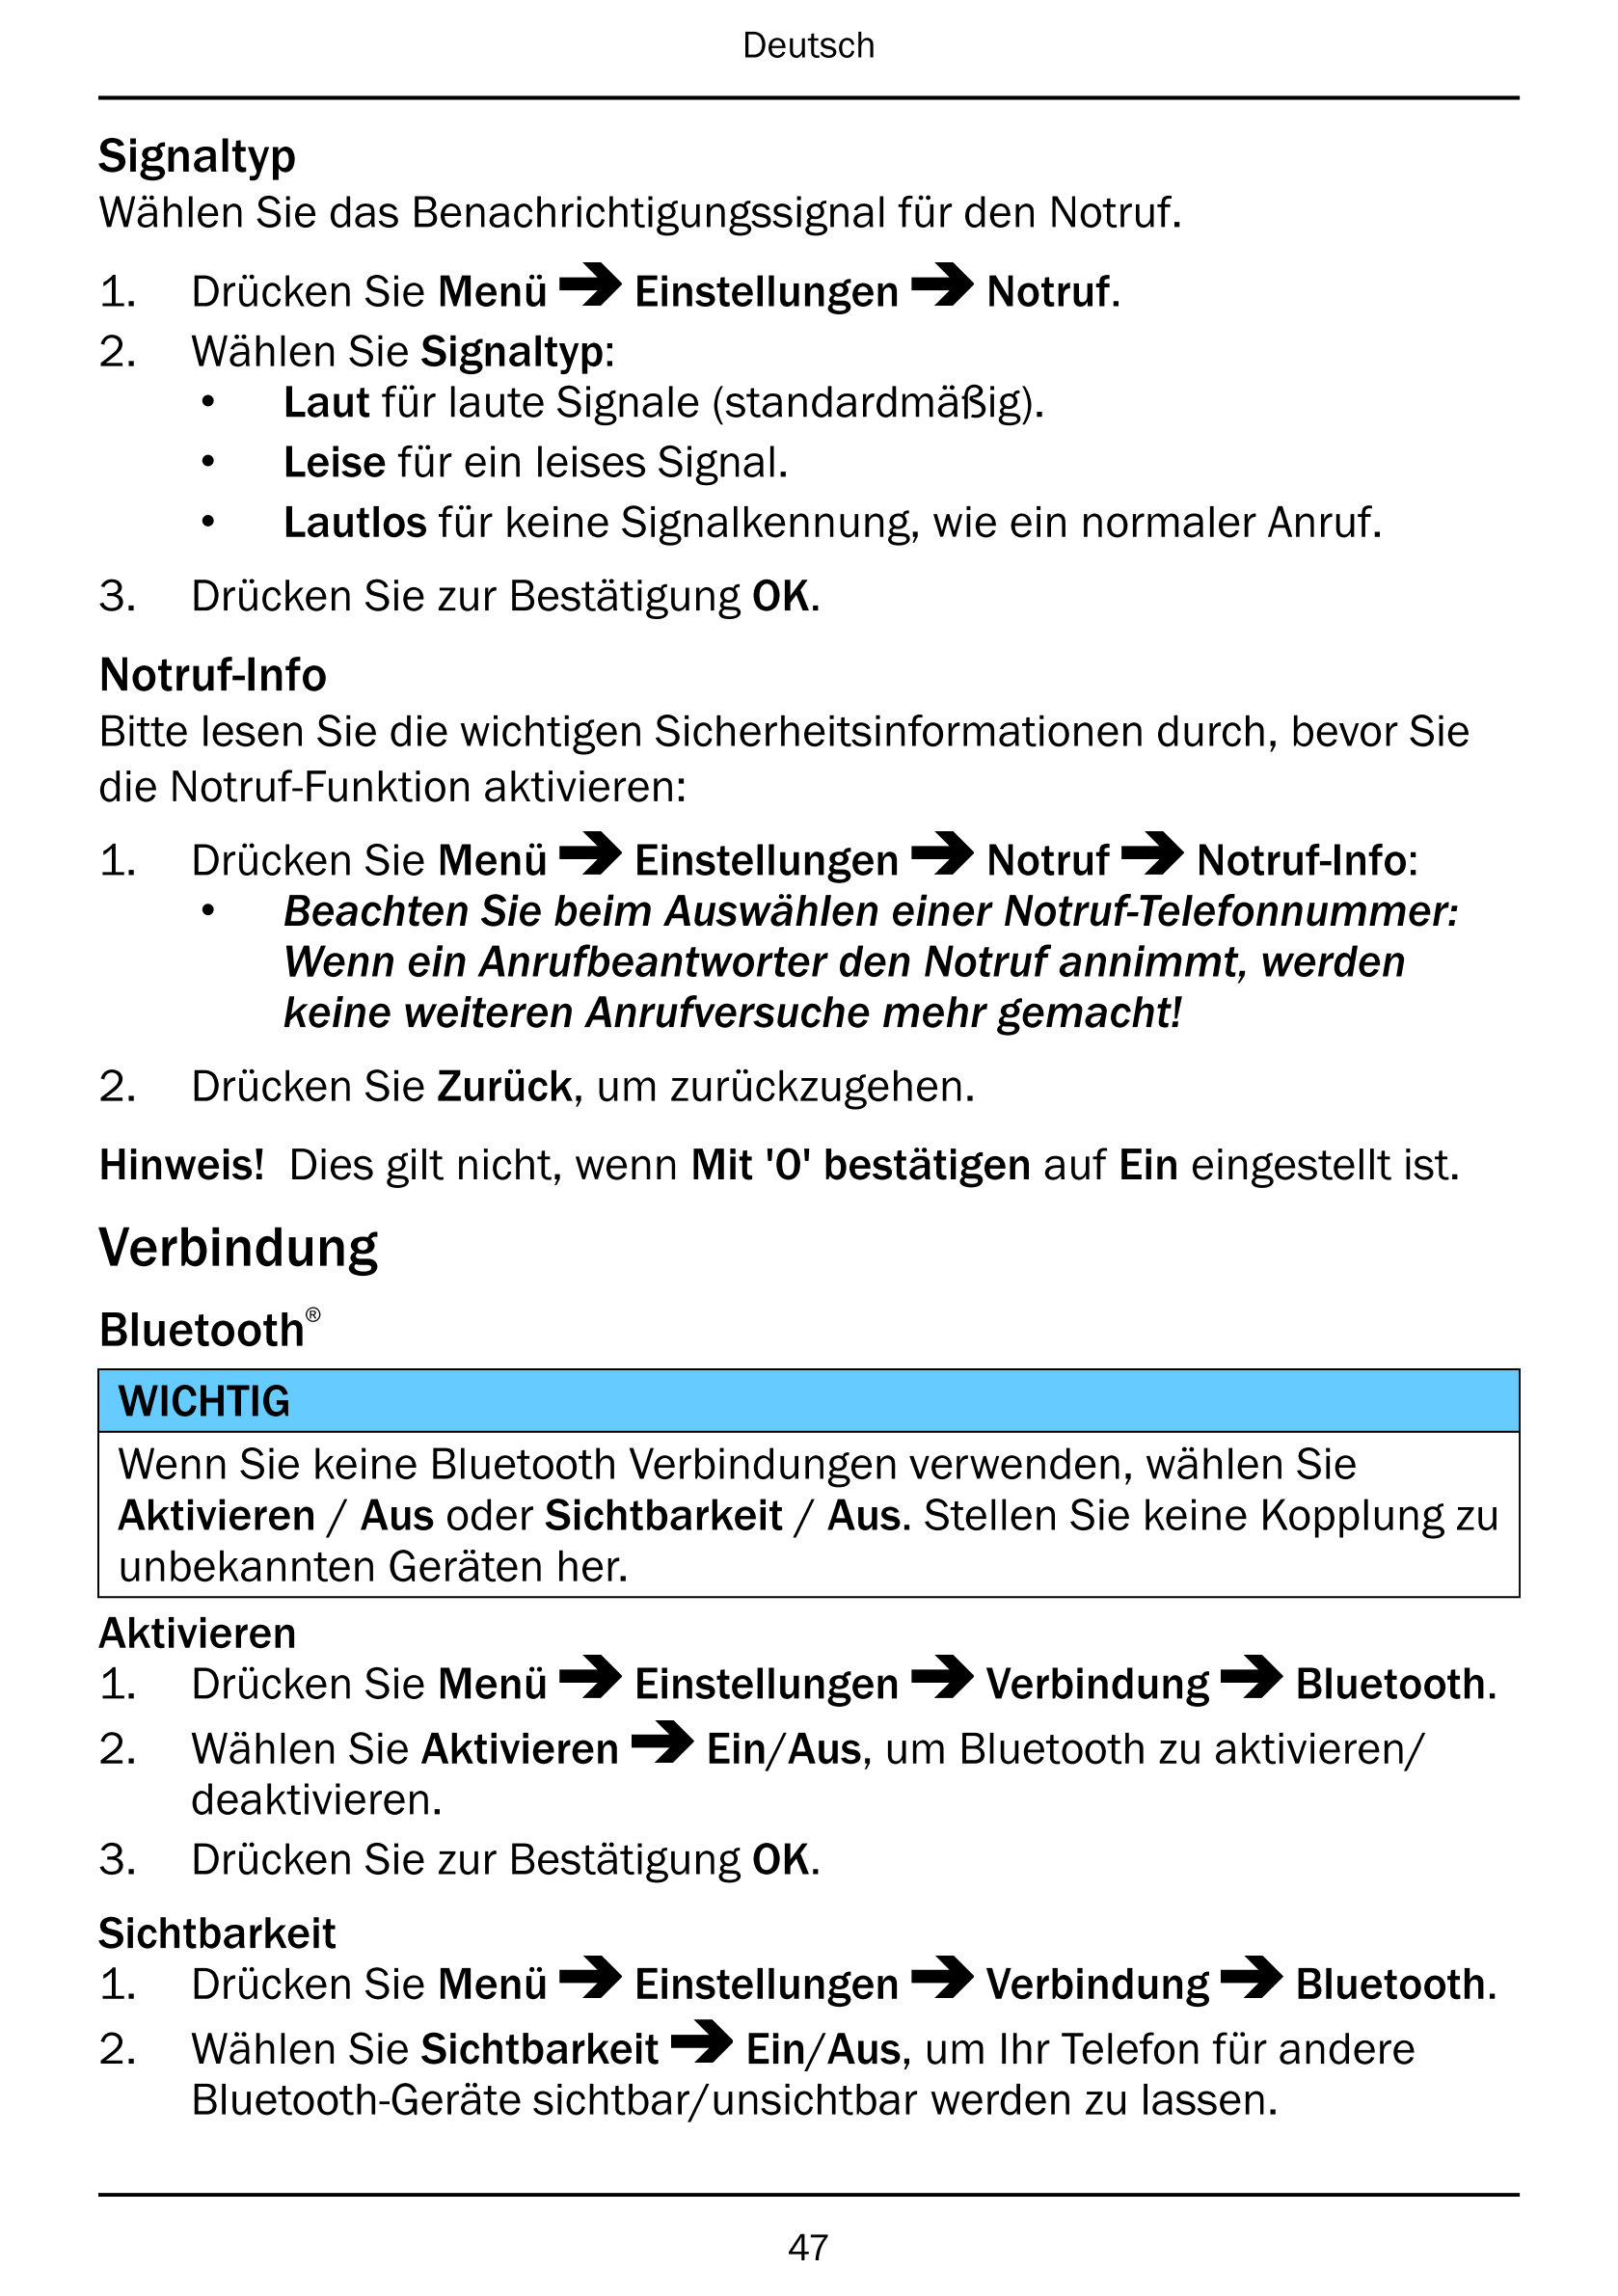 Deutsch
Signaltyp
Wählen Sie das Benachrichtigungssignal für den Notruf.
1.     Drücken Sie Menü Einstellungen Notruf.
2.     Wä